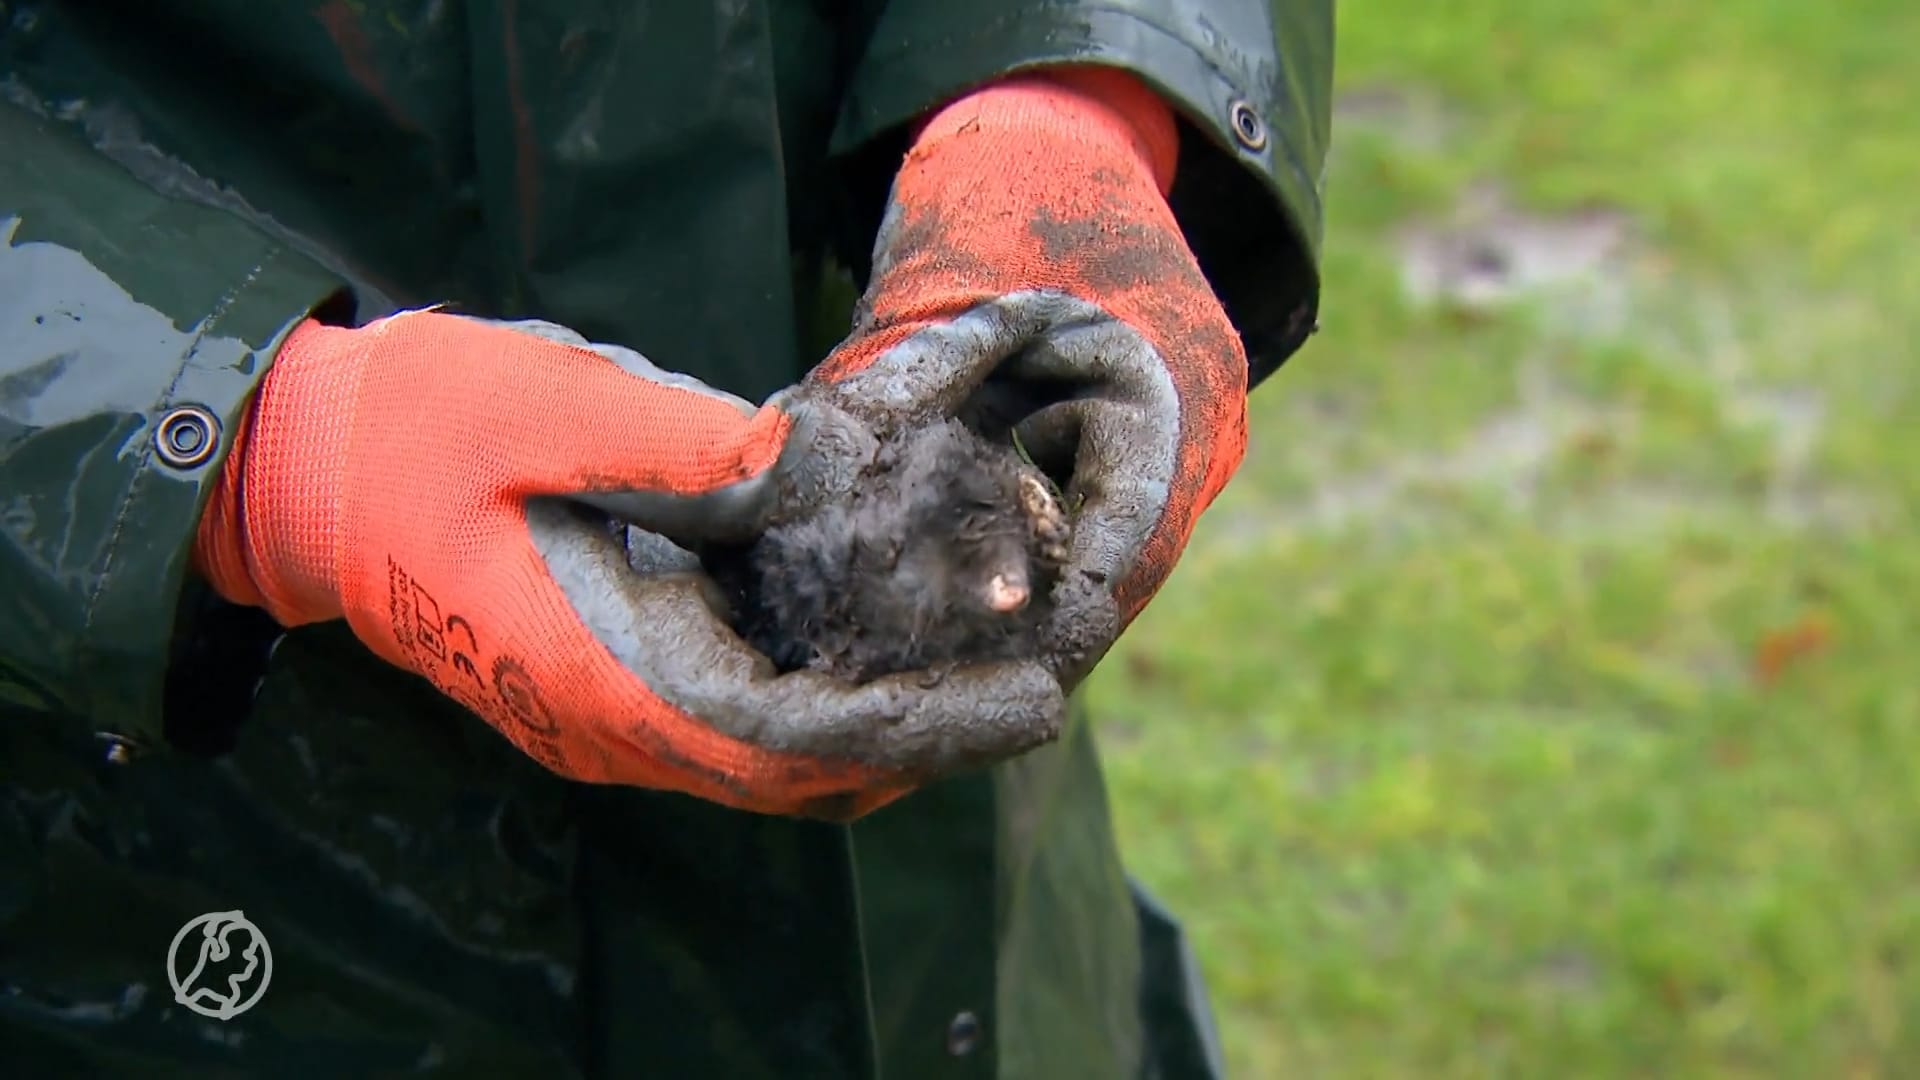 Mollenvangers draaien overuren door zachte winter: 'dat kan gevaarlijk zijn'